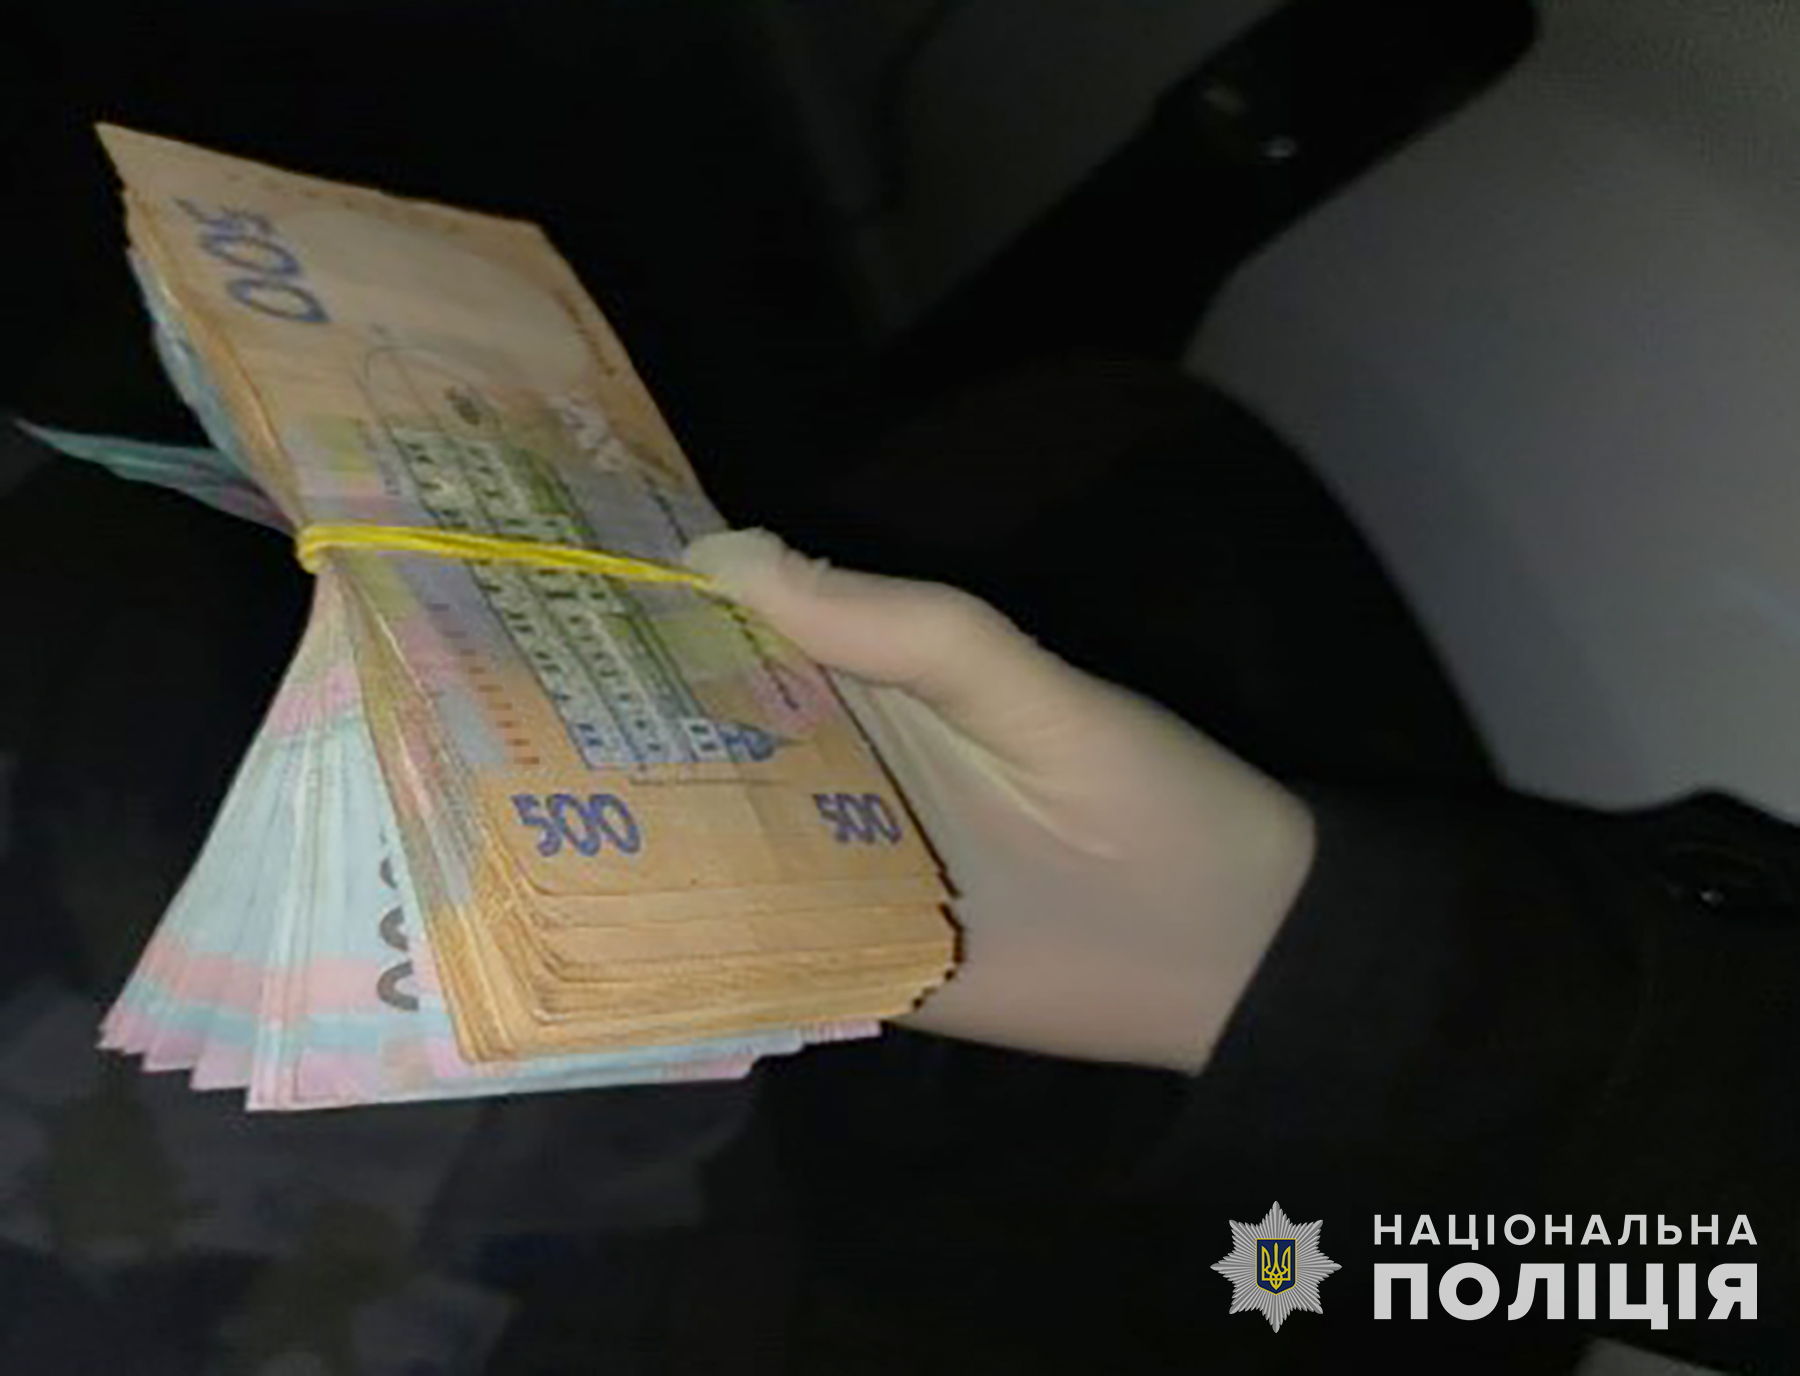 поліцейські викрили службову особу пат «запоріжжяобленерго» та його посібника, які отримали 45 тисяч гривень неправомірної вигоди за позитивний висновок перевірки